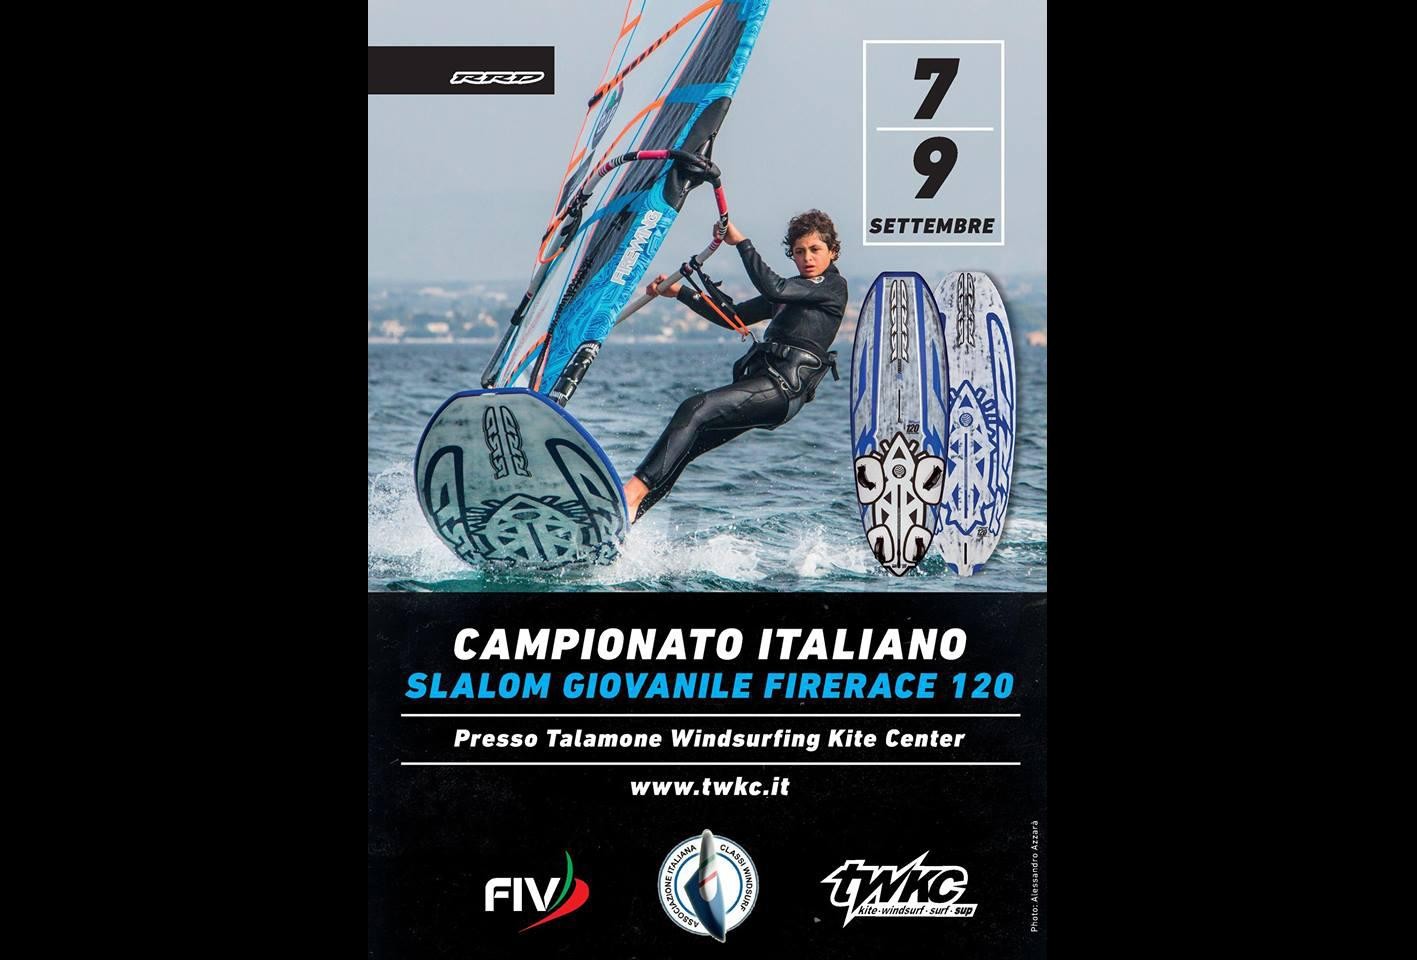 Campionato Italiano Giovanile Slalom Windsurf 2018 – FireRace 120